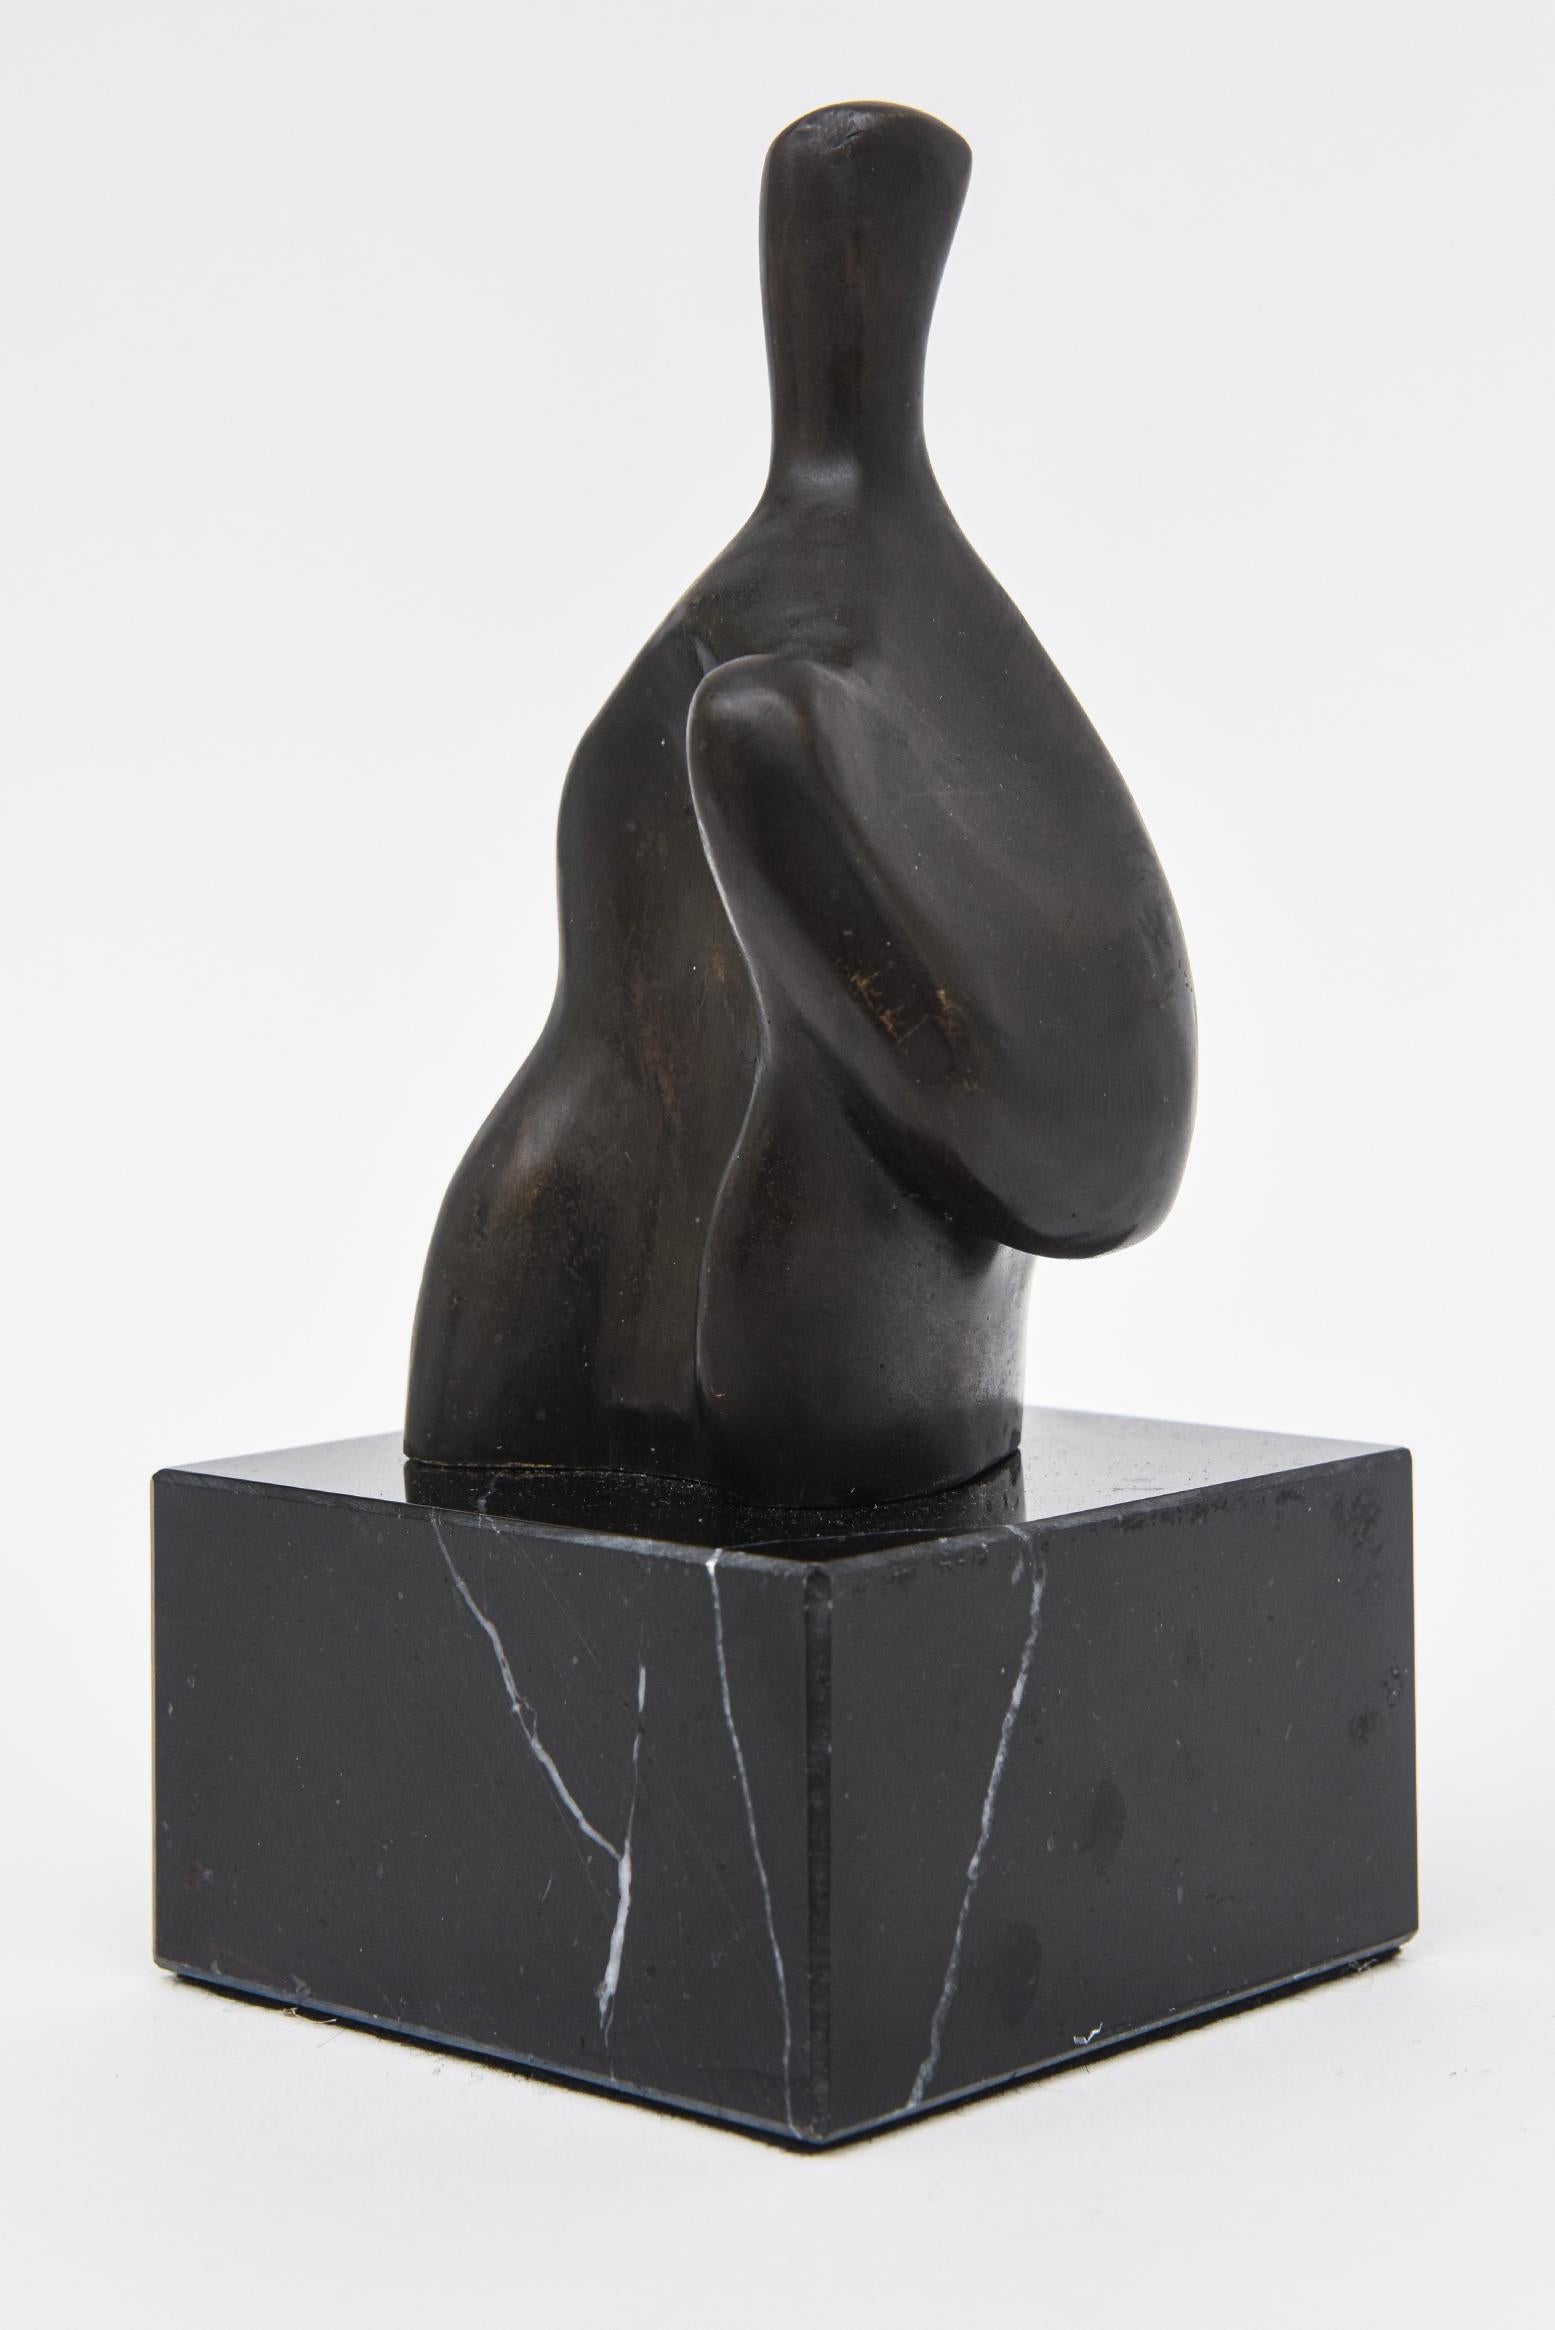 Diese einzigartige abstrakte figurative Bronzeskulptur steht auf einem schwarz geäderten Marmorsockel und ist nicht nummeriert. Der Stil erinnert sehr stark an einen Henry Moore und ist von diesem beeinflusst. Tolle kleine Tischskulptur als